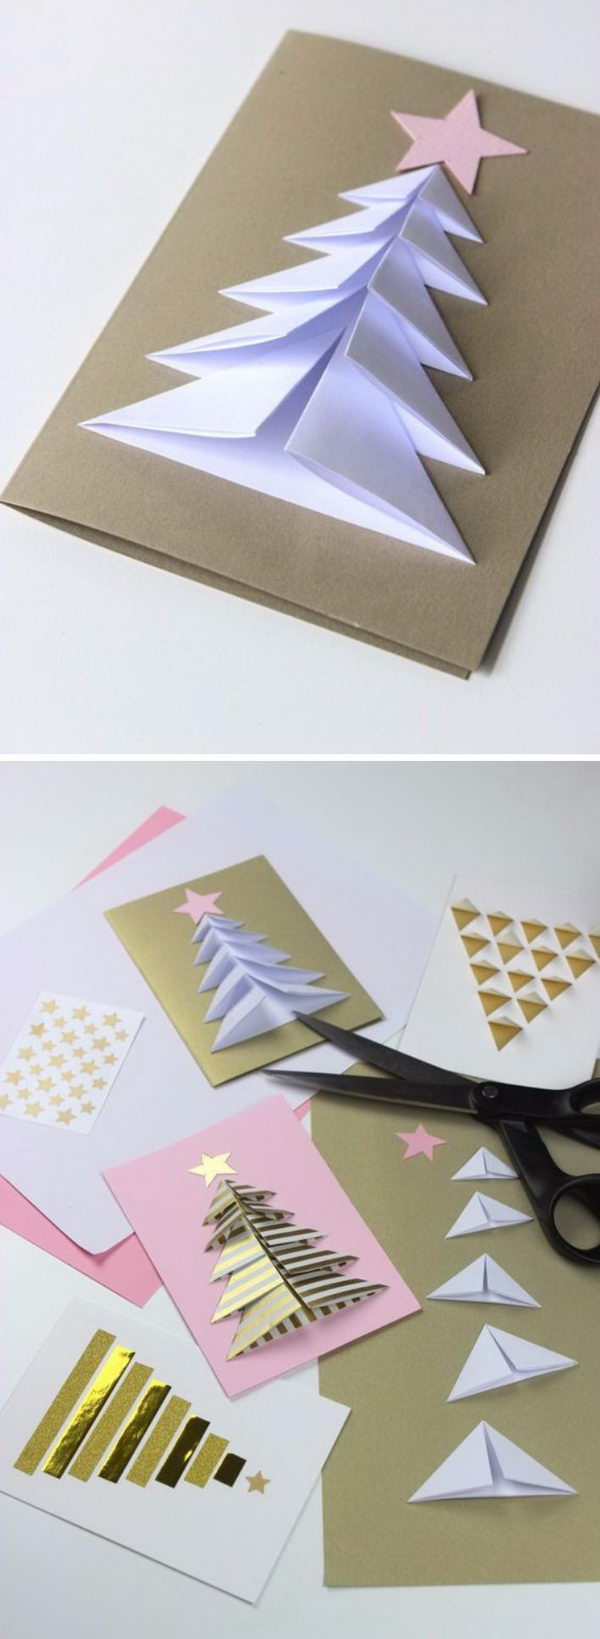 20+ Handmade Christmas Card Ideas